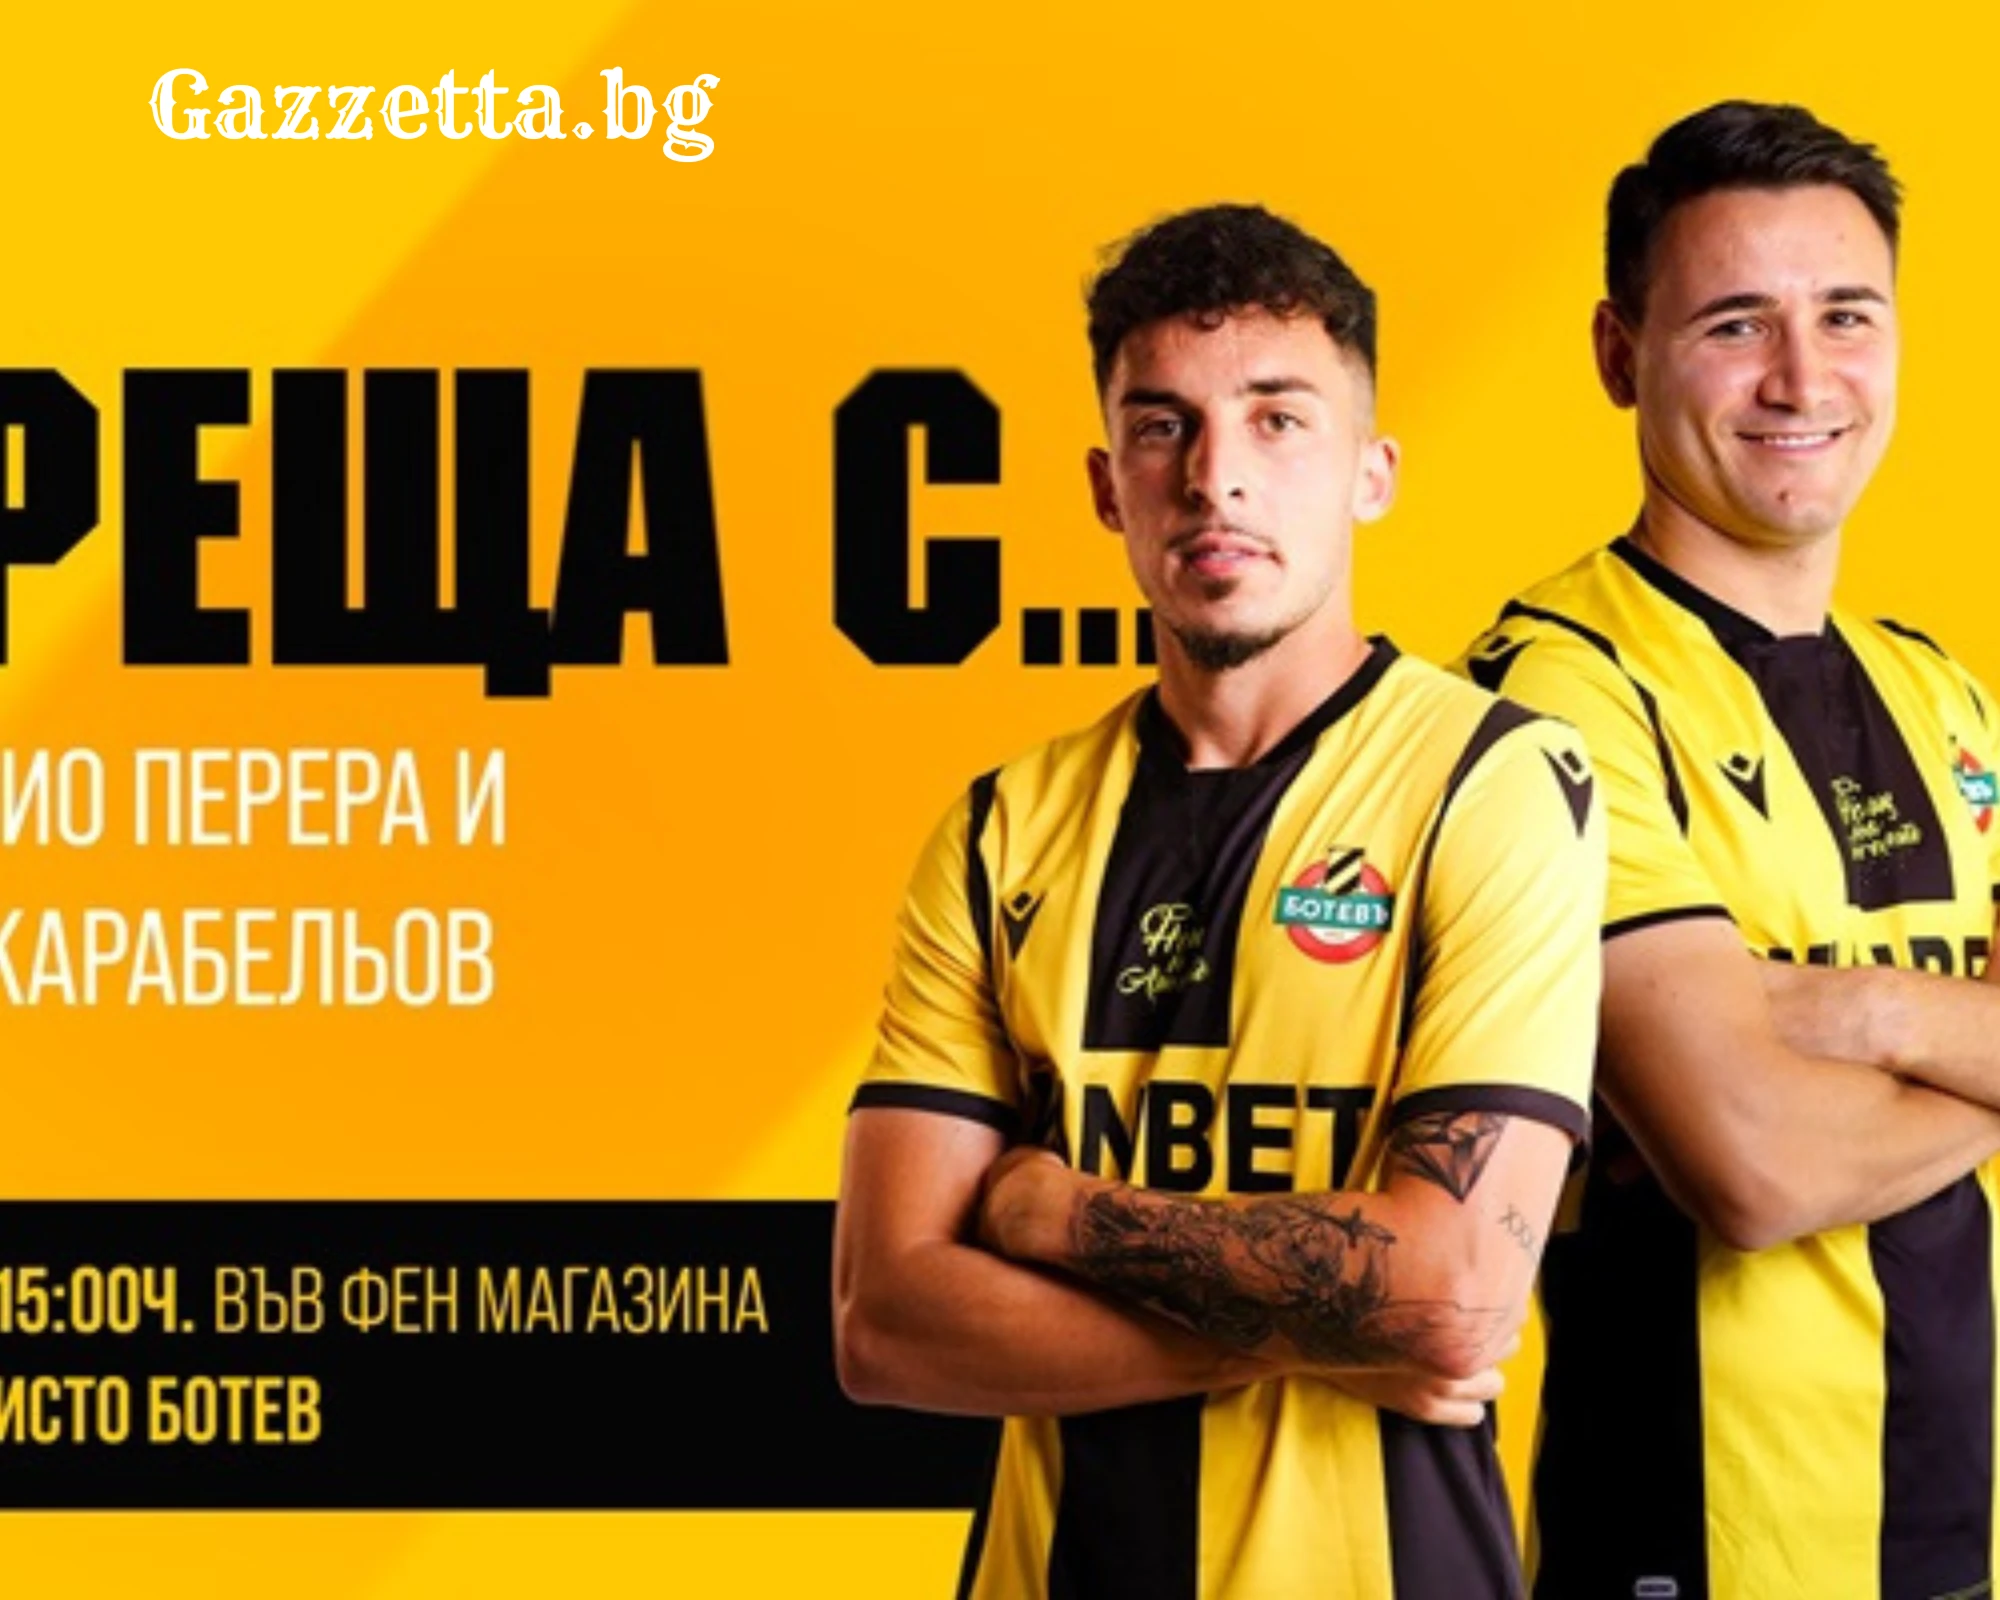 Ботев Пловдив стартира поредицата „Жълто-черни срещи“